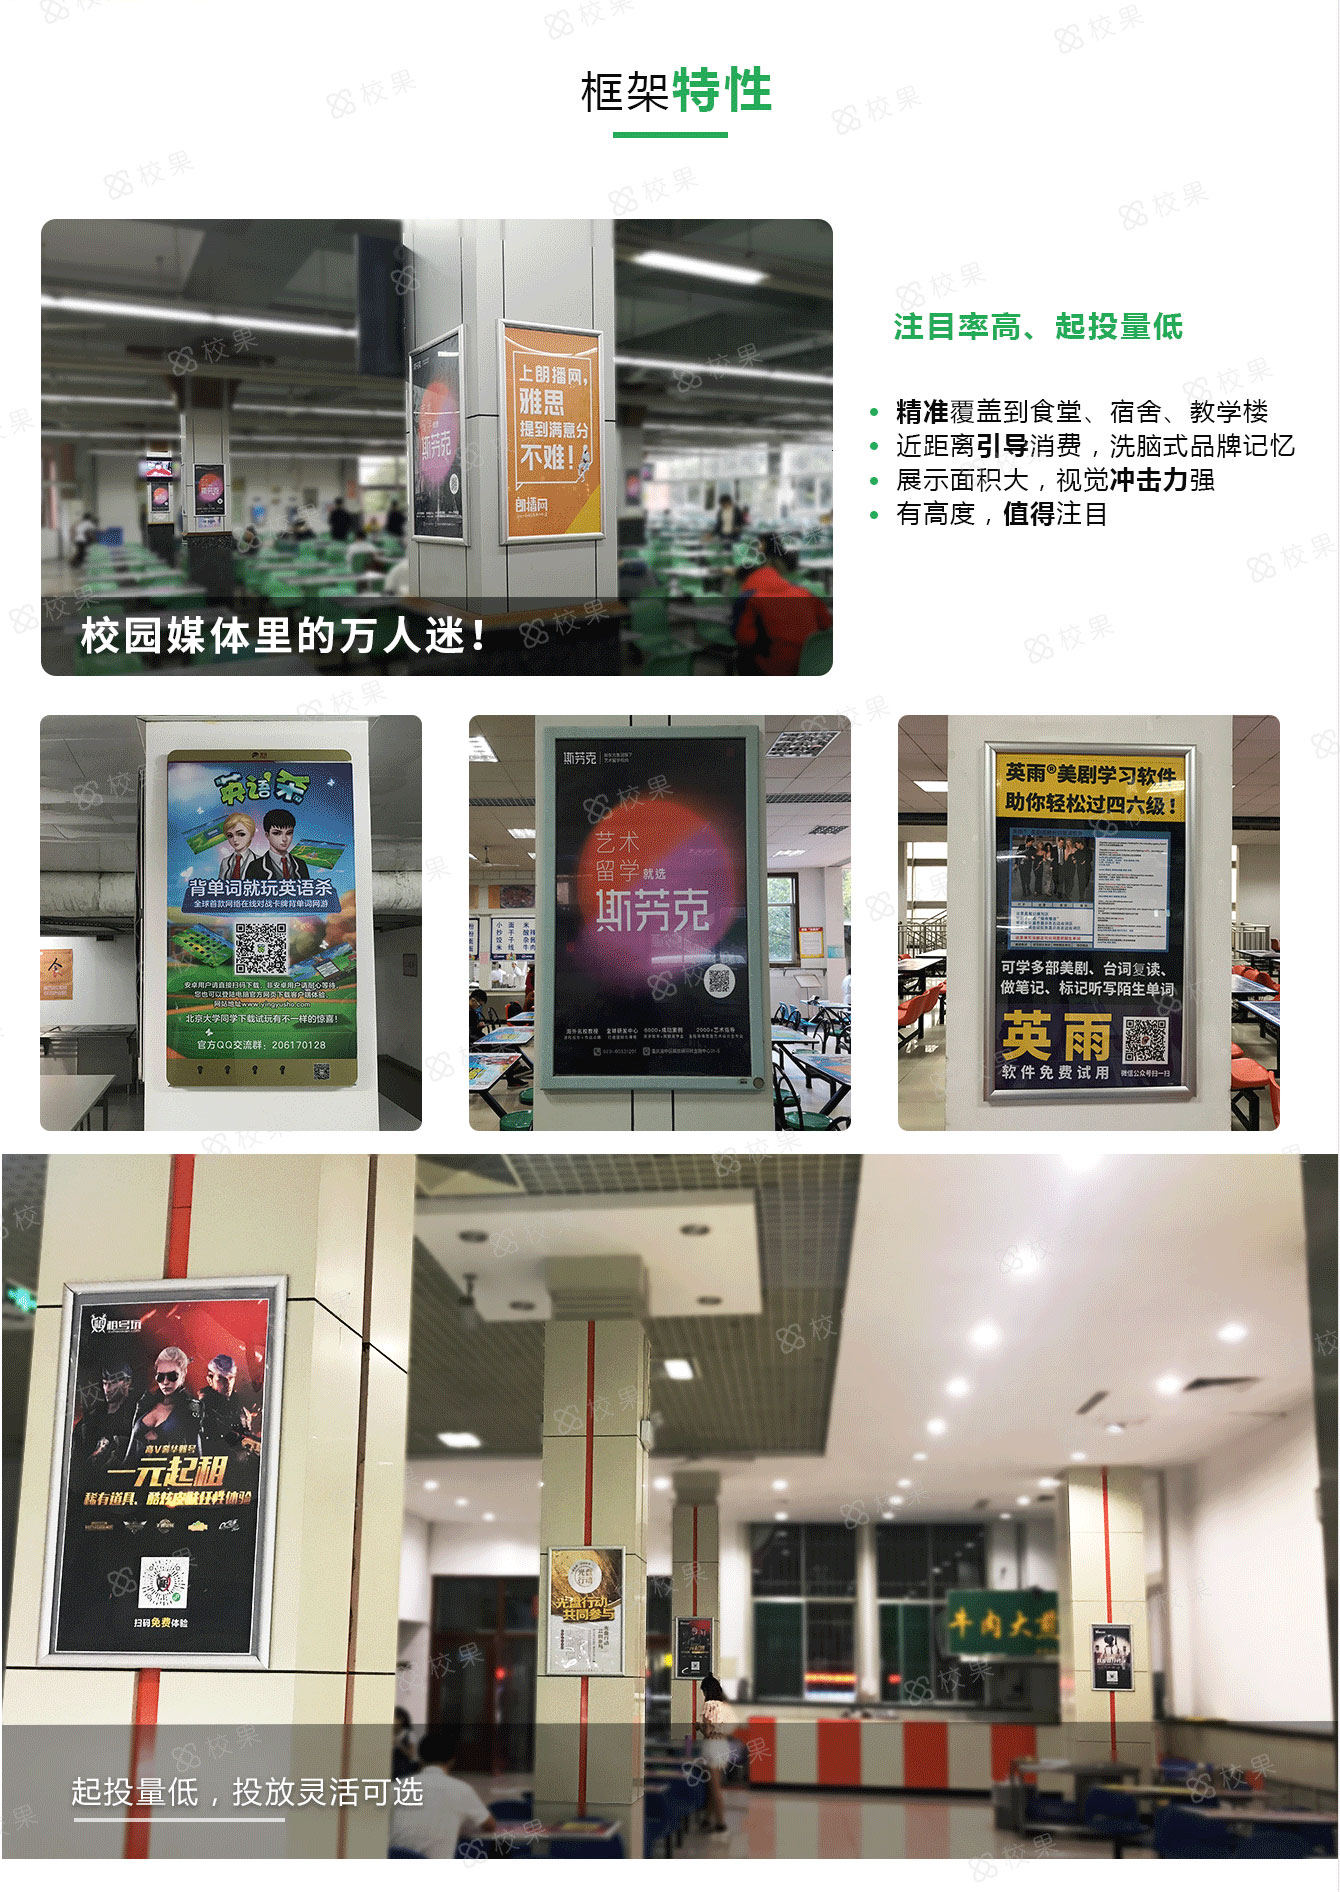 杭州高校框架广告特征